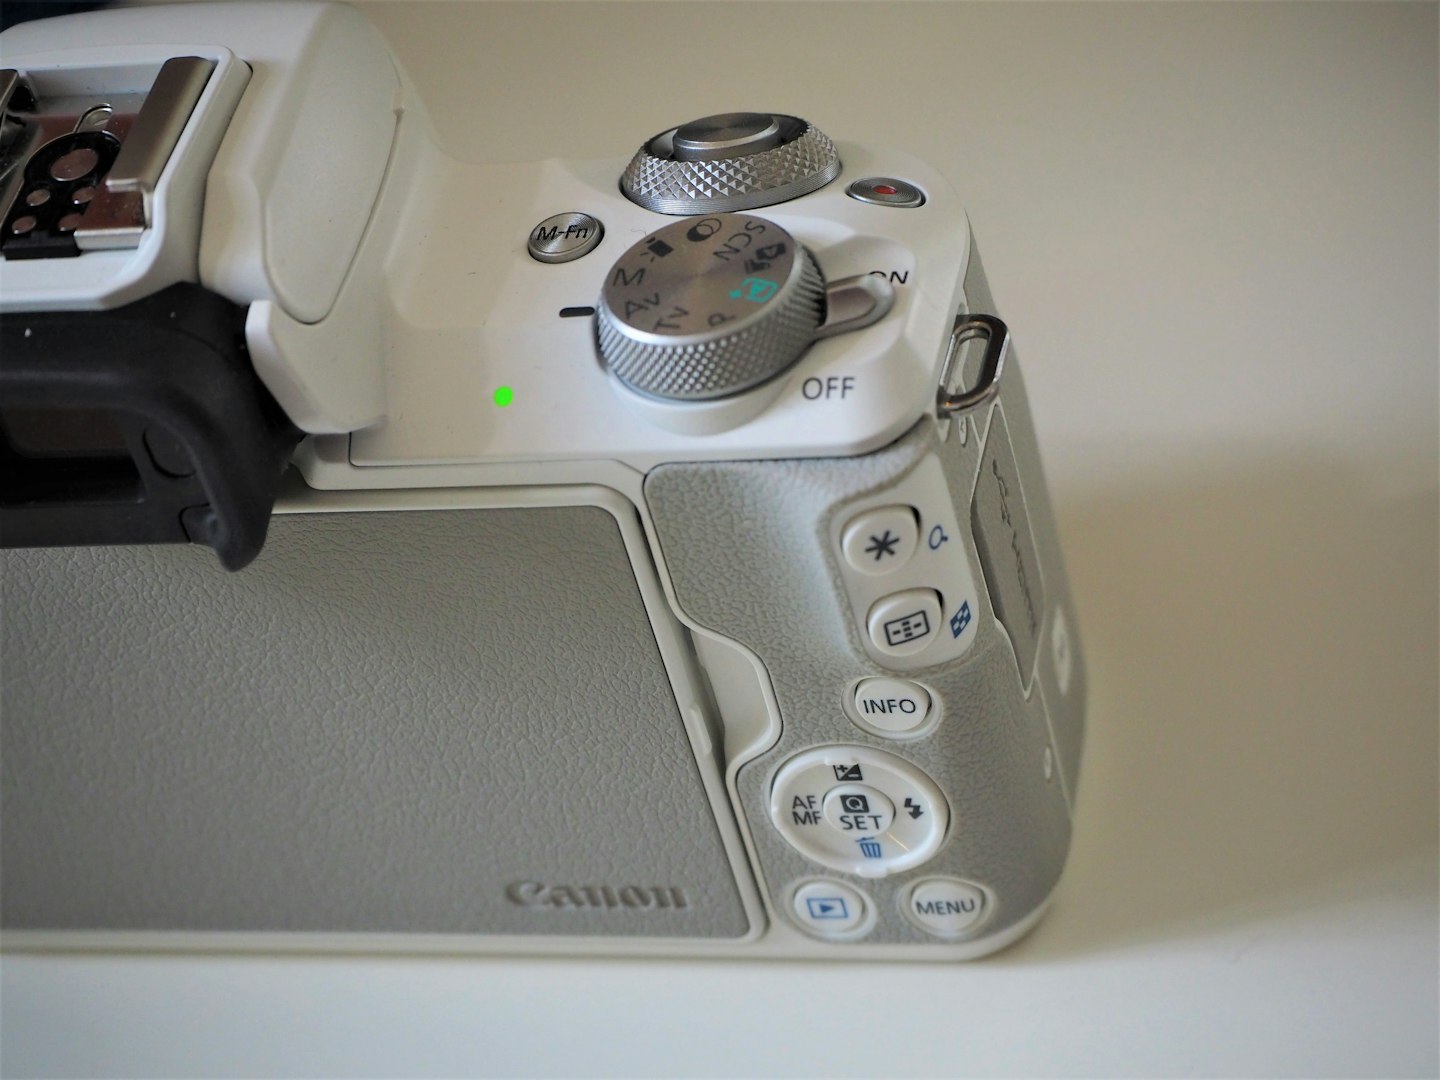 Canon EOS M50 MkII controls